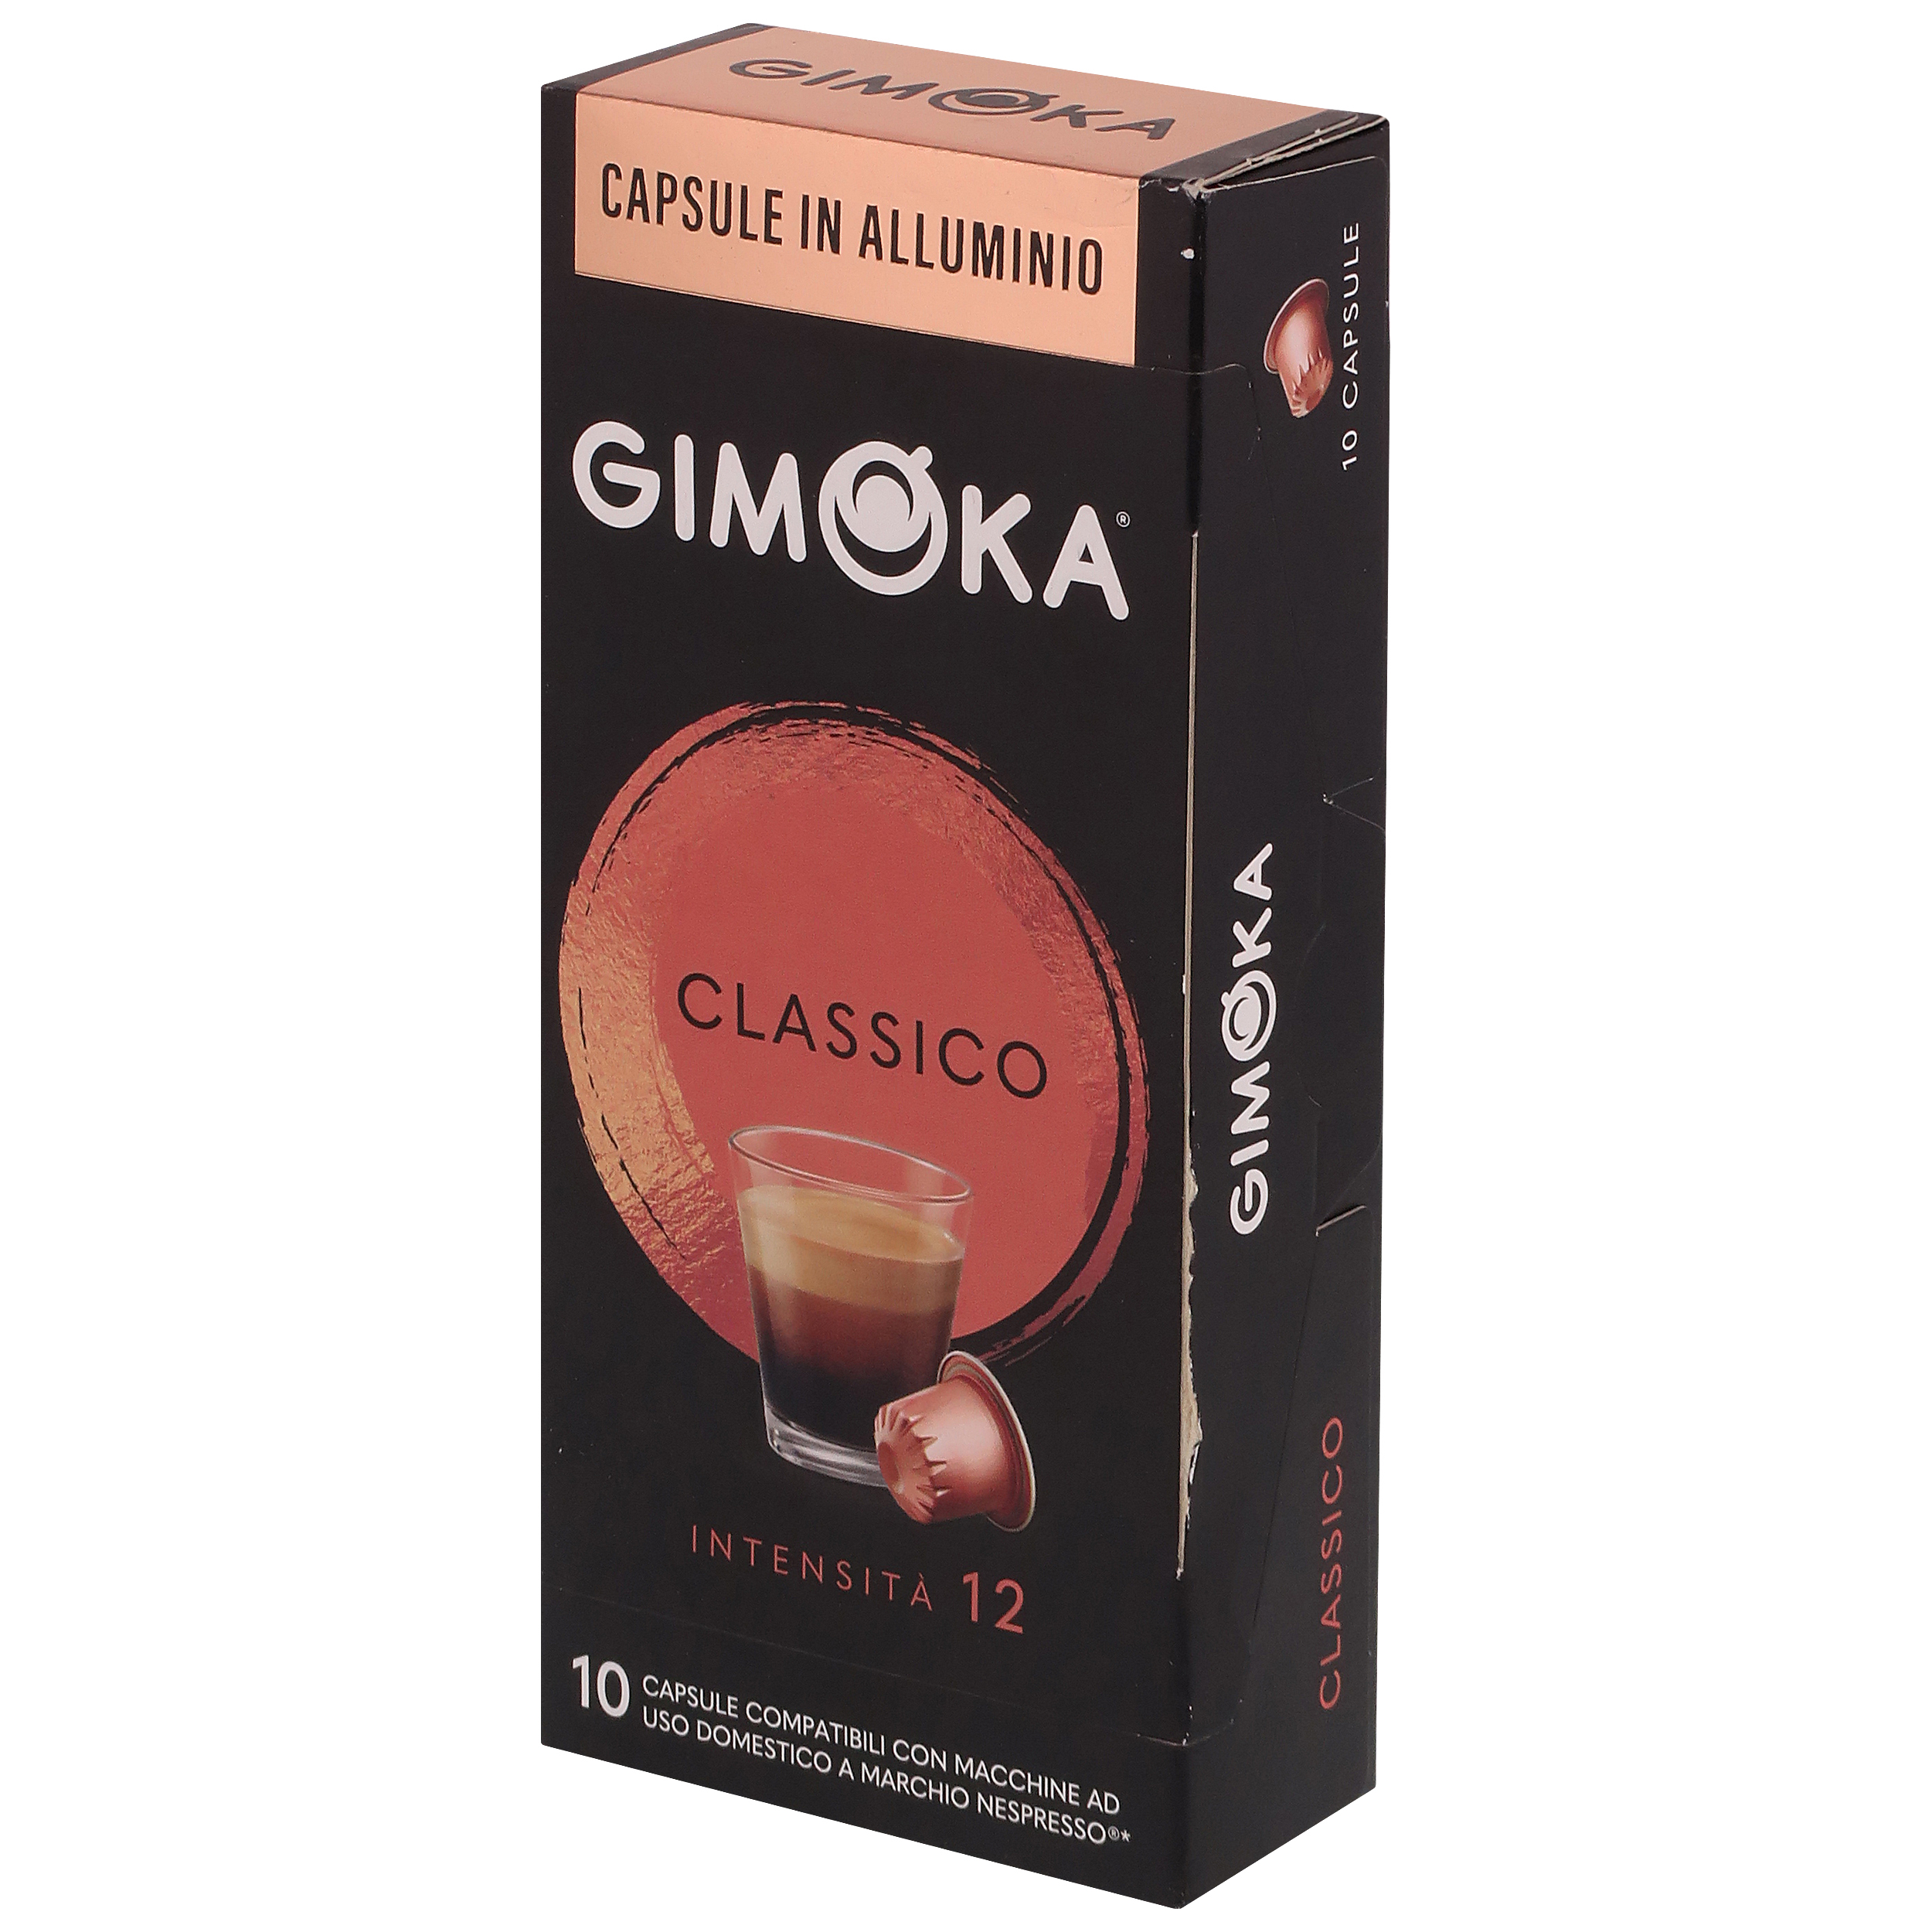 کپسول قهوه CLASSICO جیموکا بسته 10 عددی